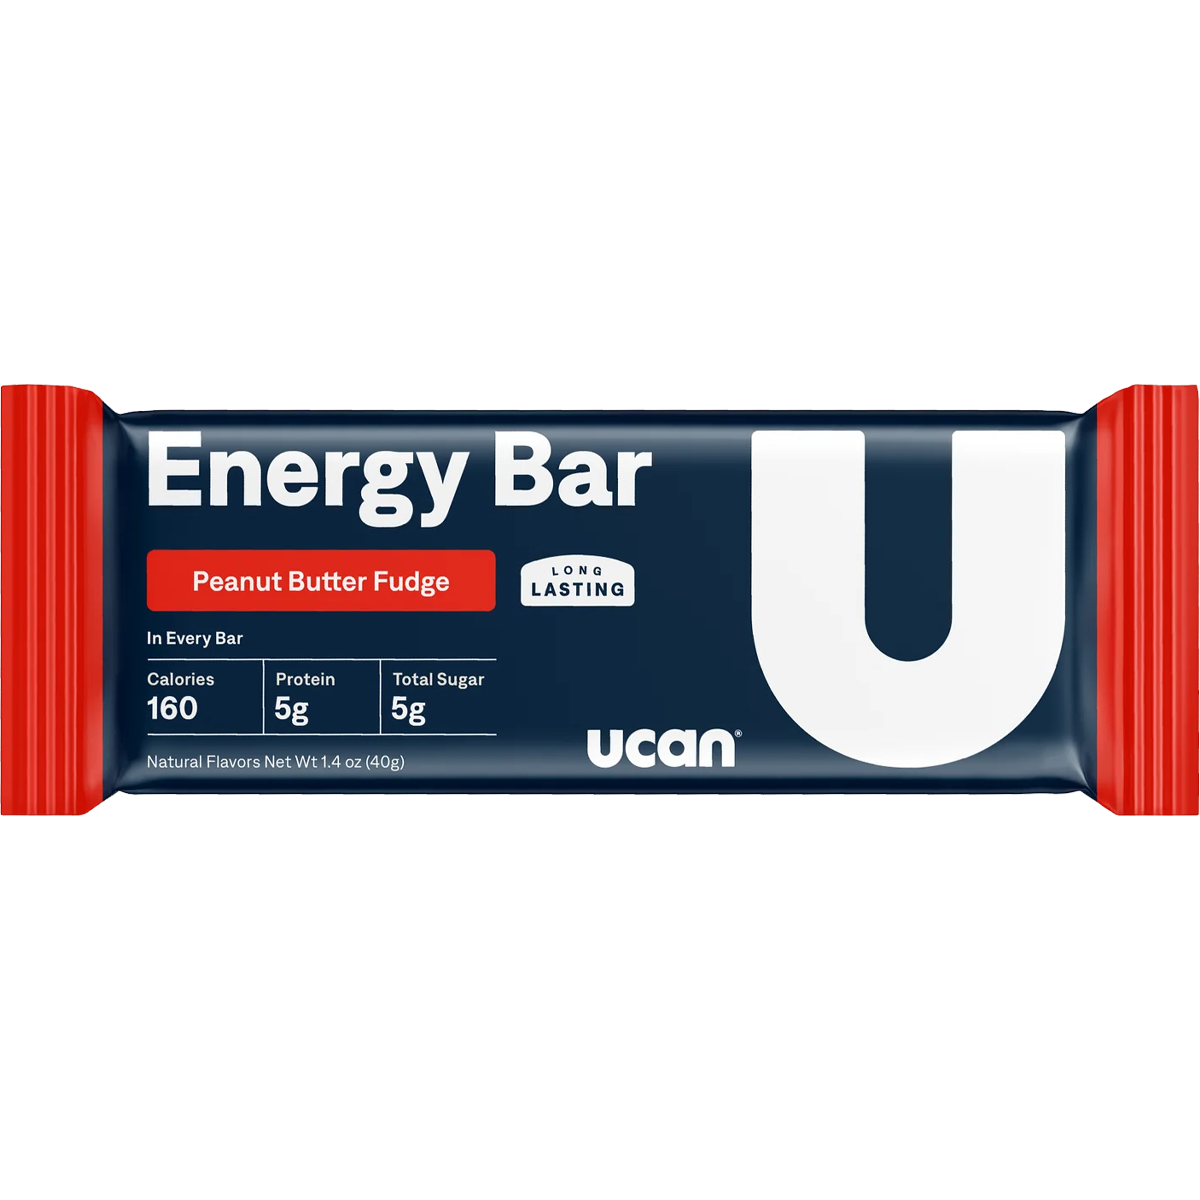 Energy Bars alternate view